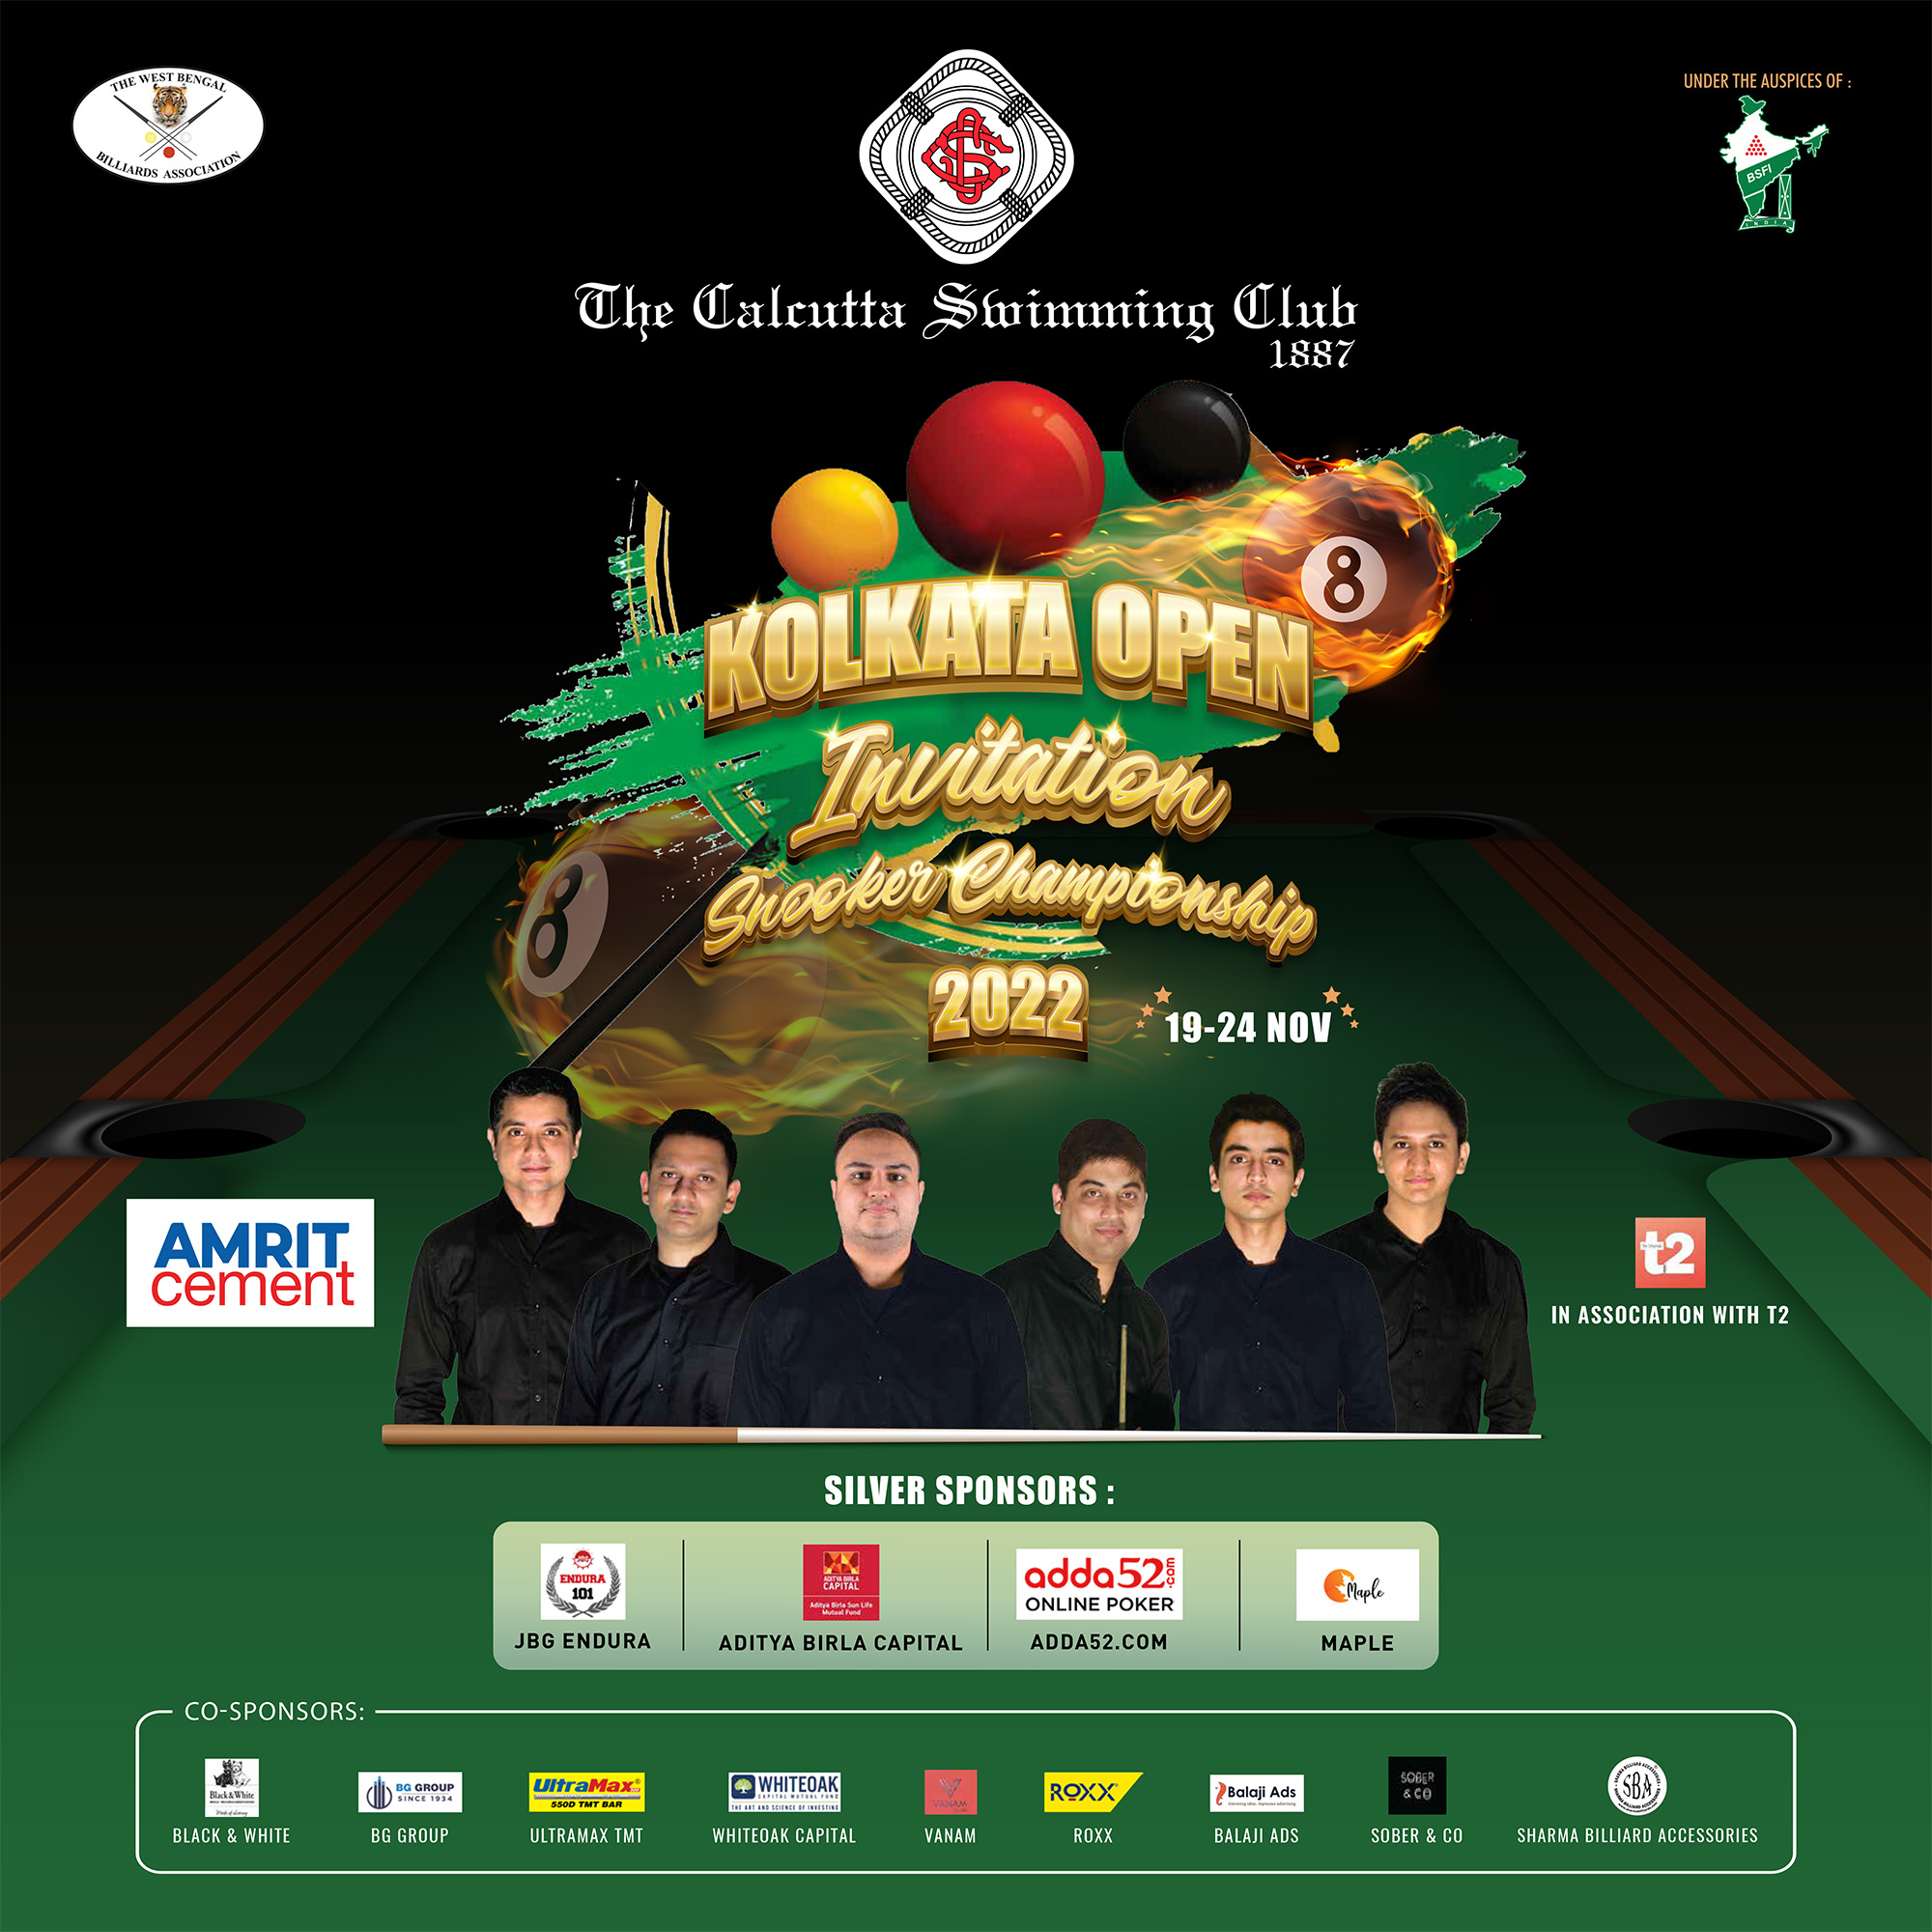 CSI Kolkata Open Invitation Snooker Championship 2022